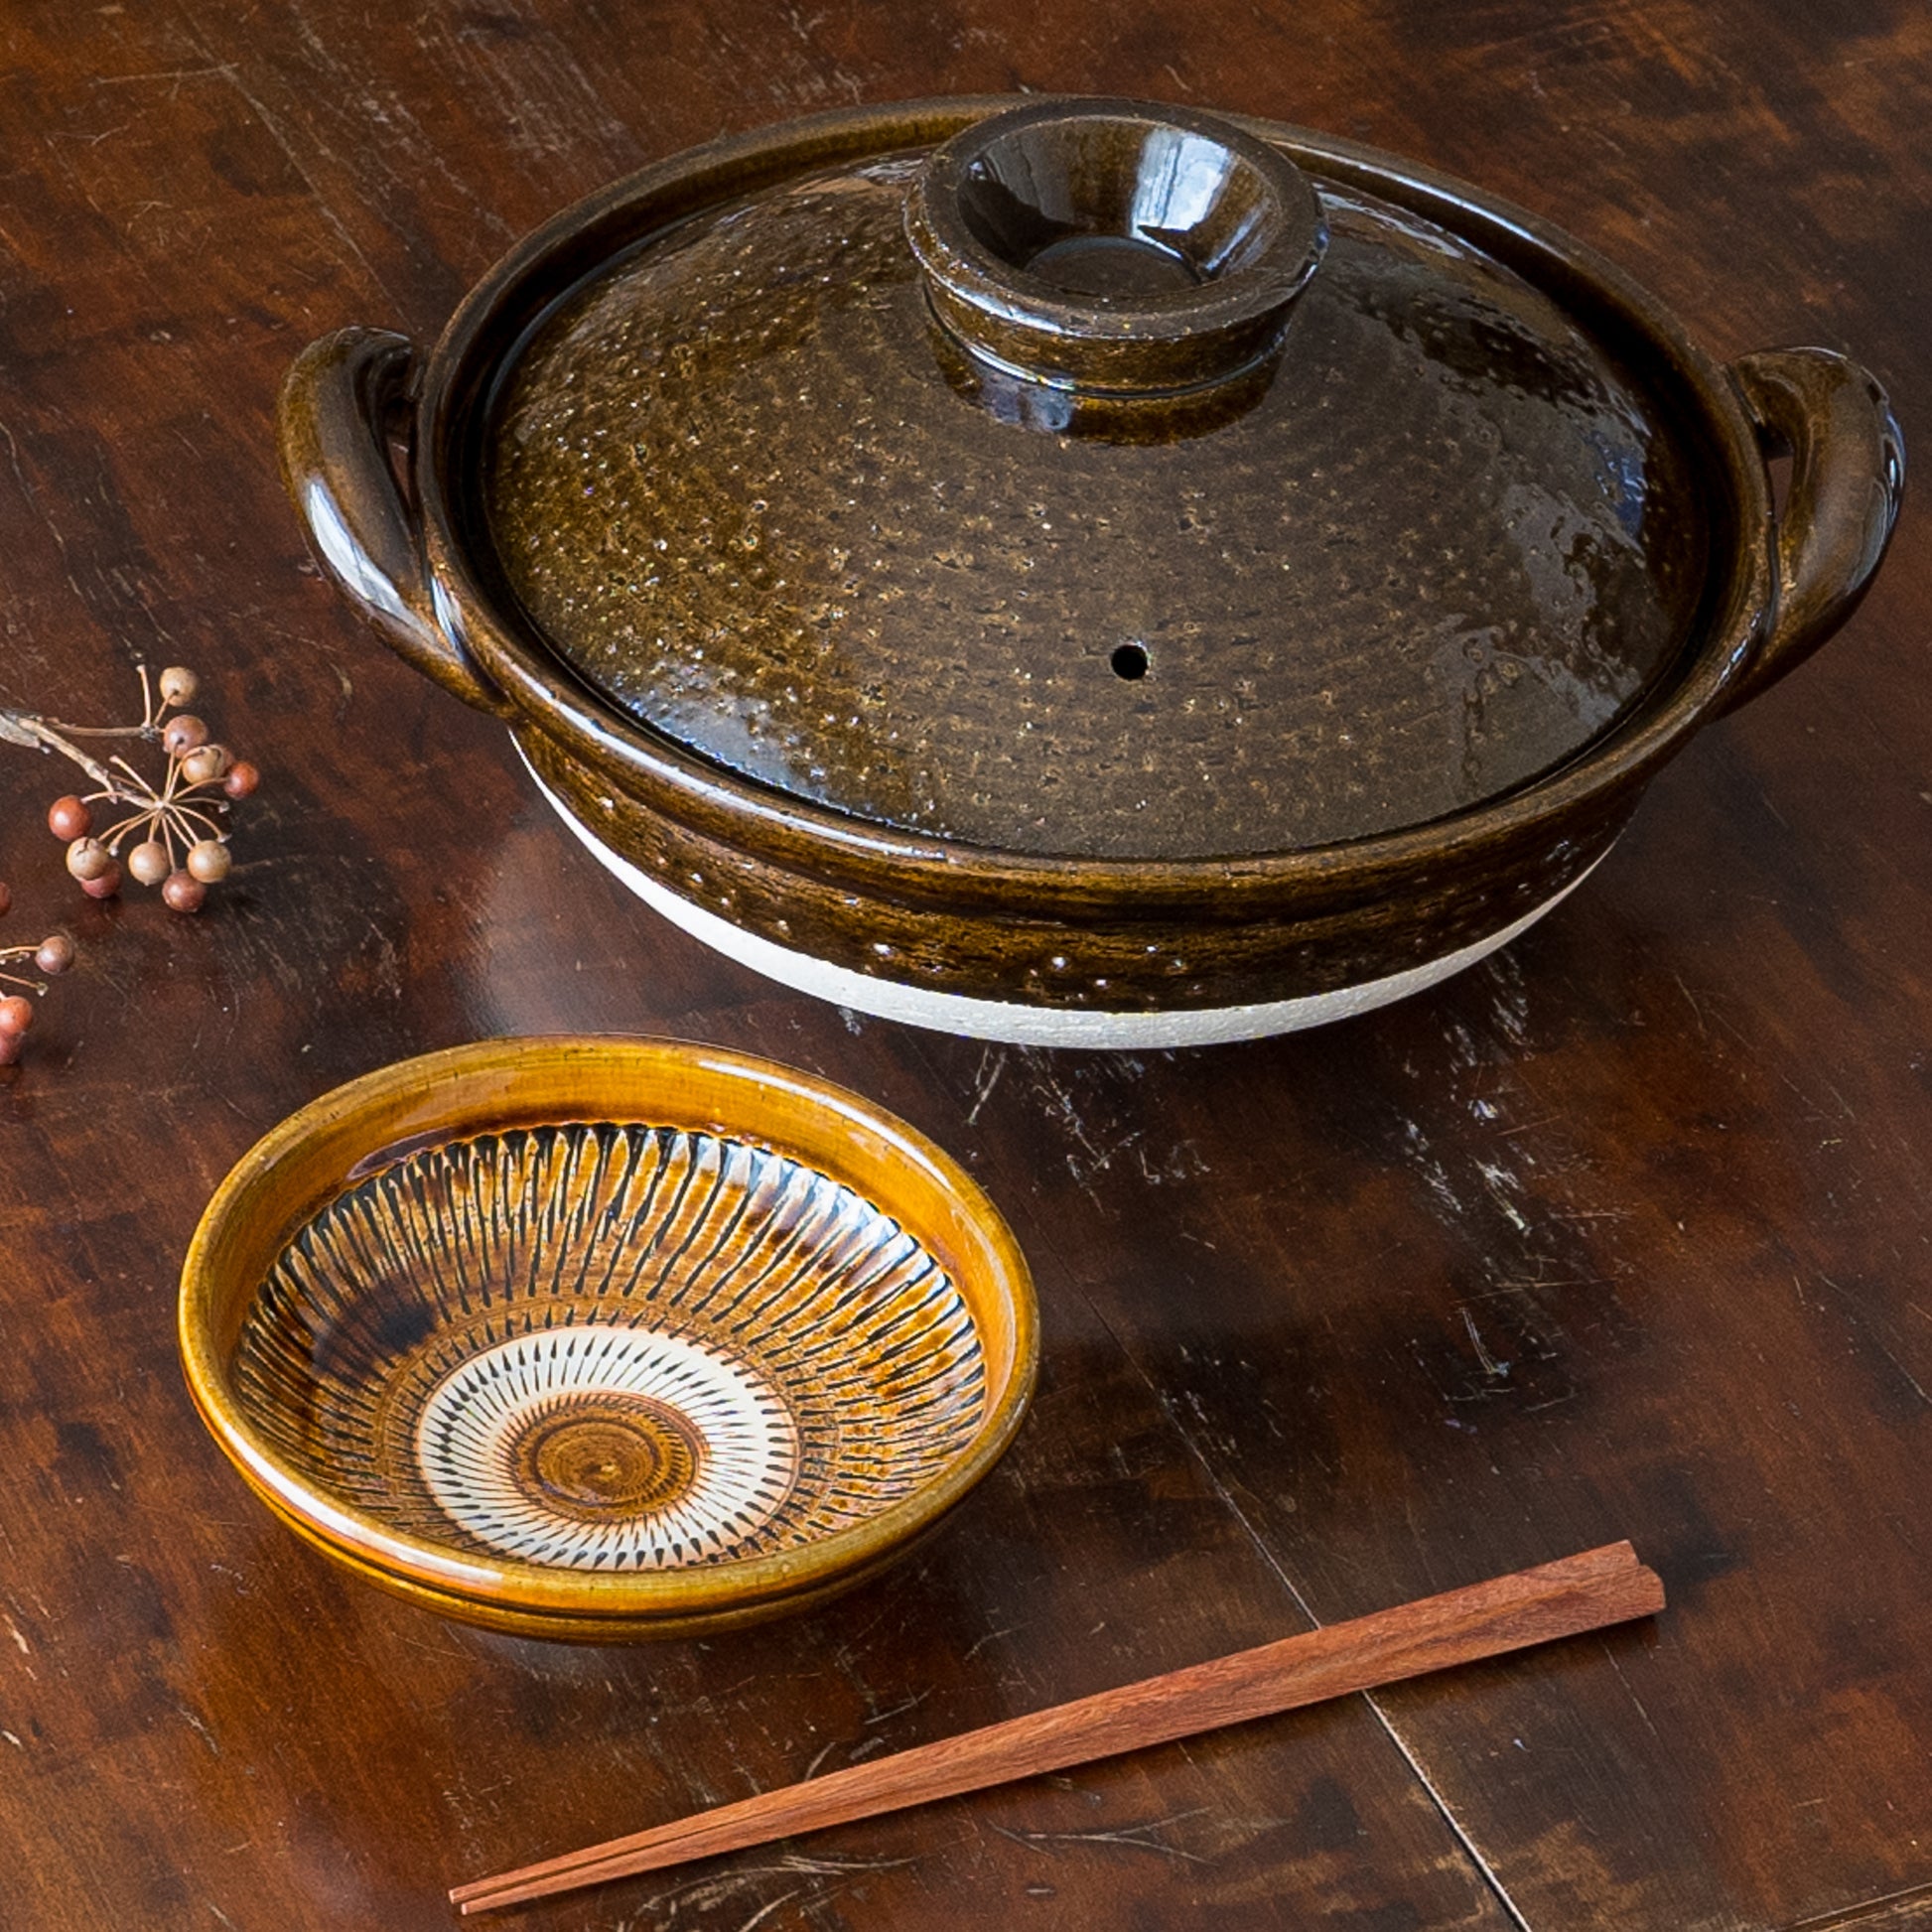 冬の食卓が賑やかで楽しくなる伊賀焼長谷園の土鍋